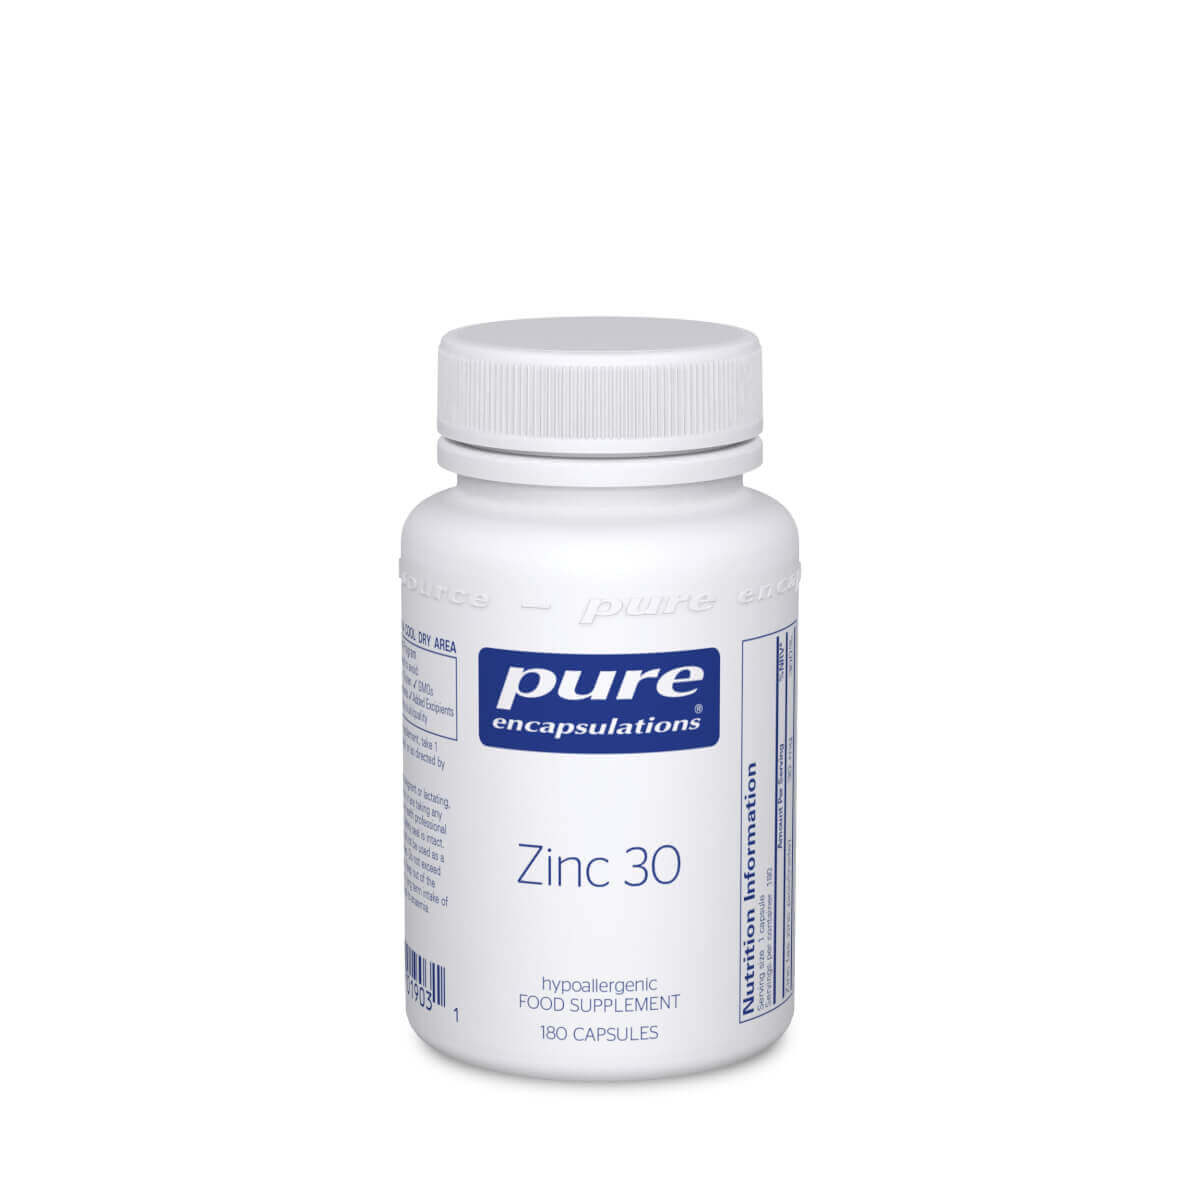 Pure Encapsulations Zinc 30 180 caps, Health and Wellness